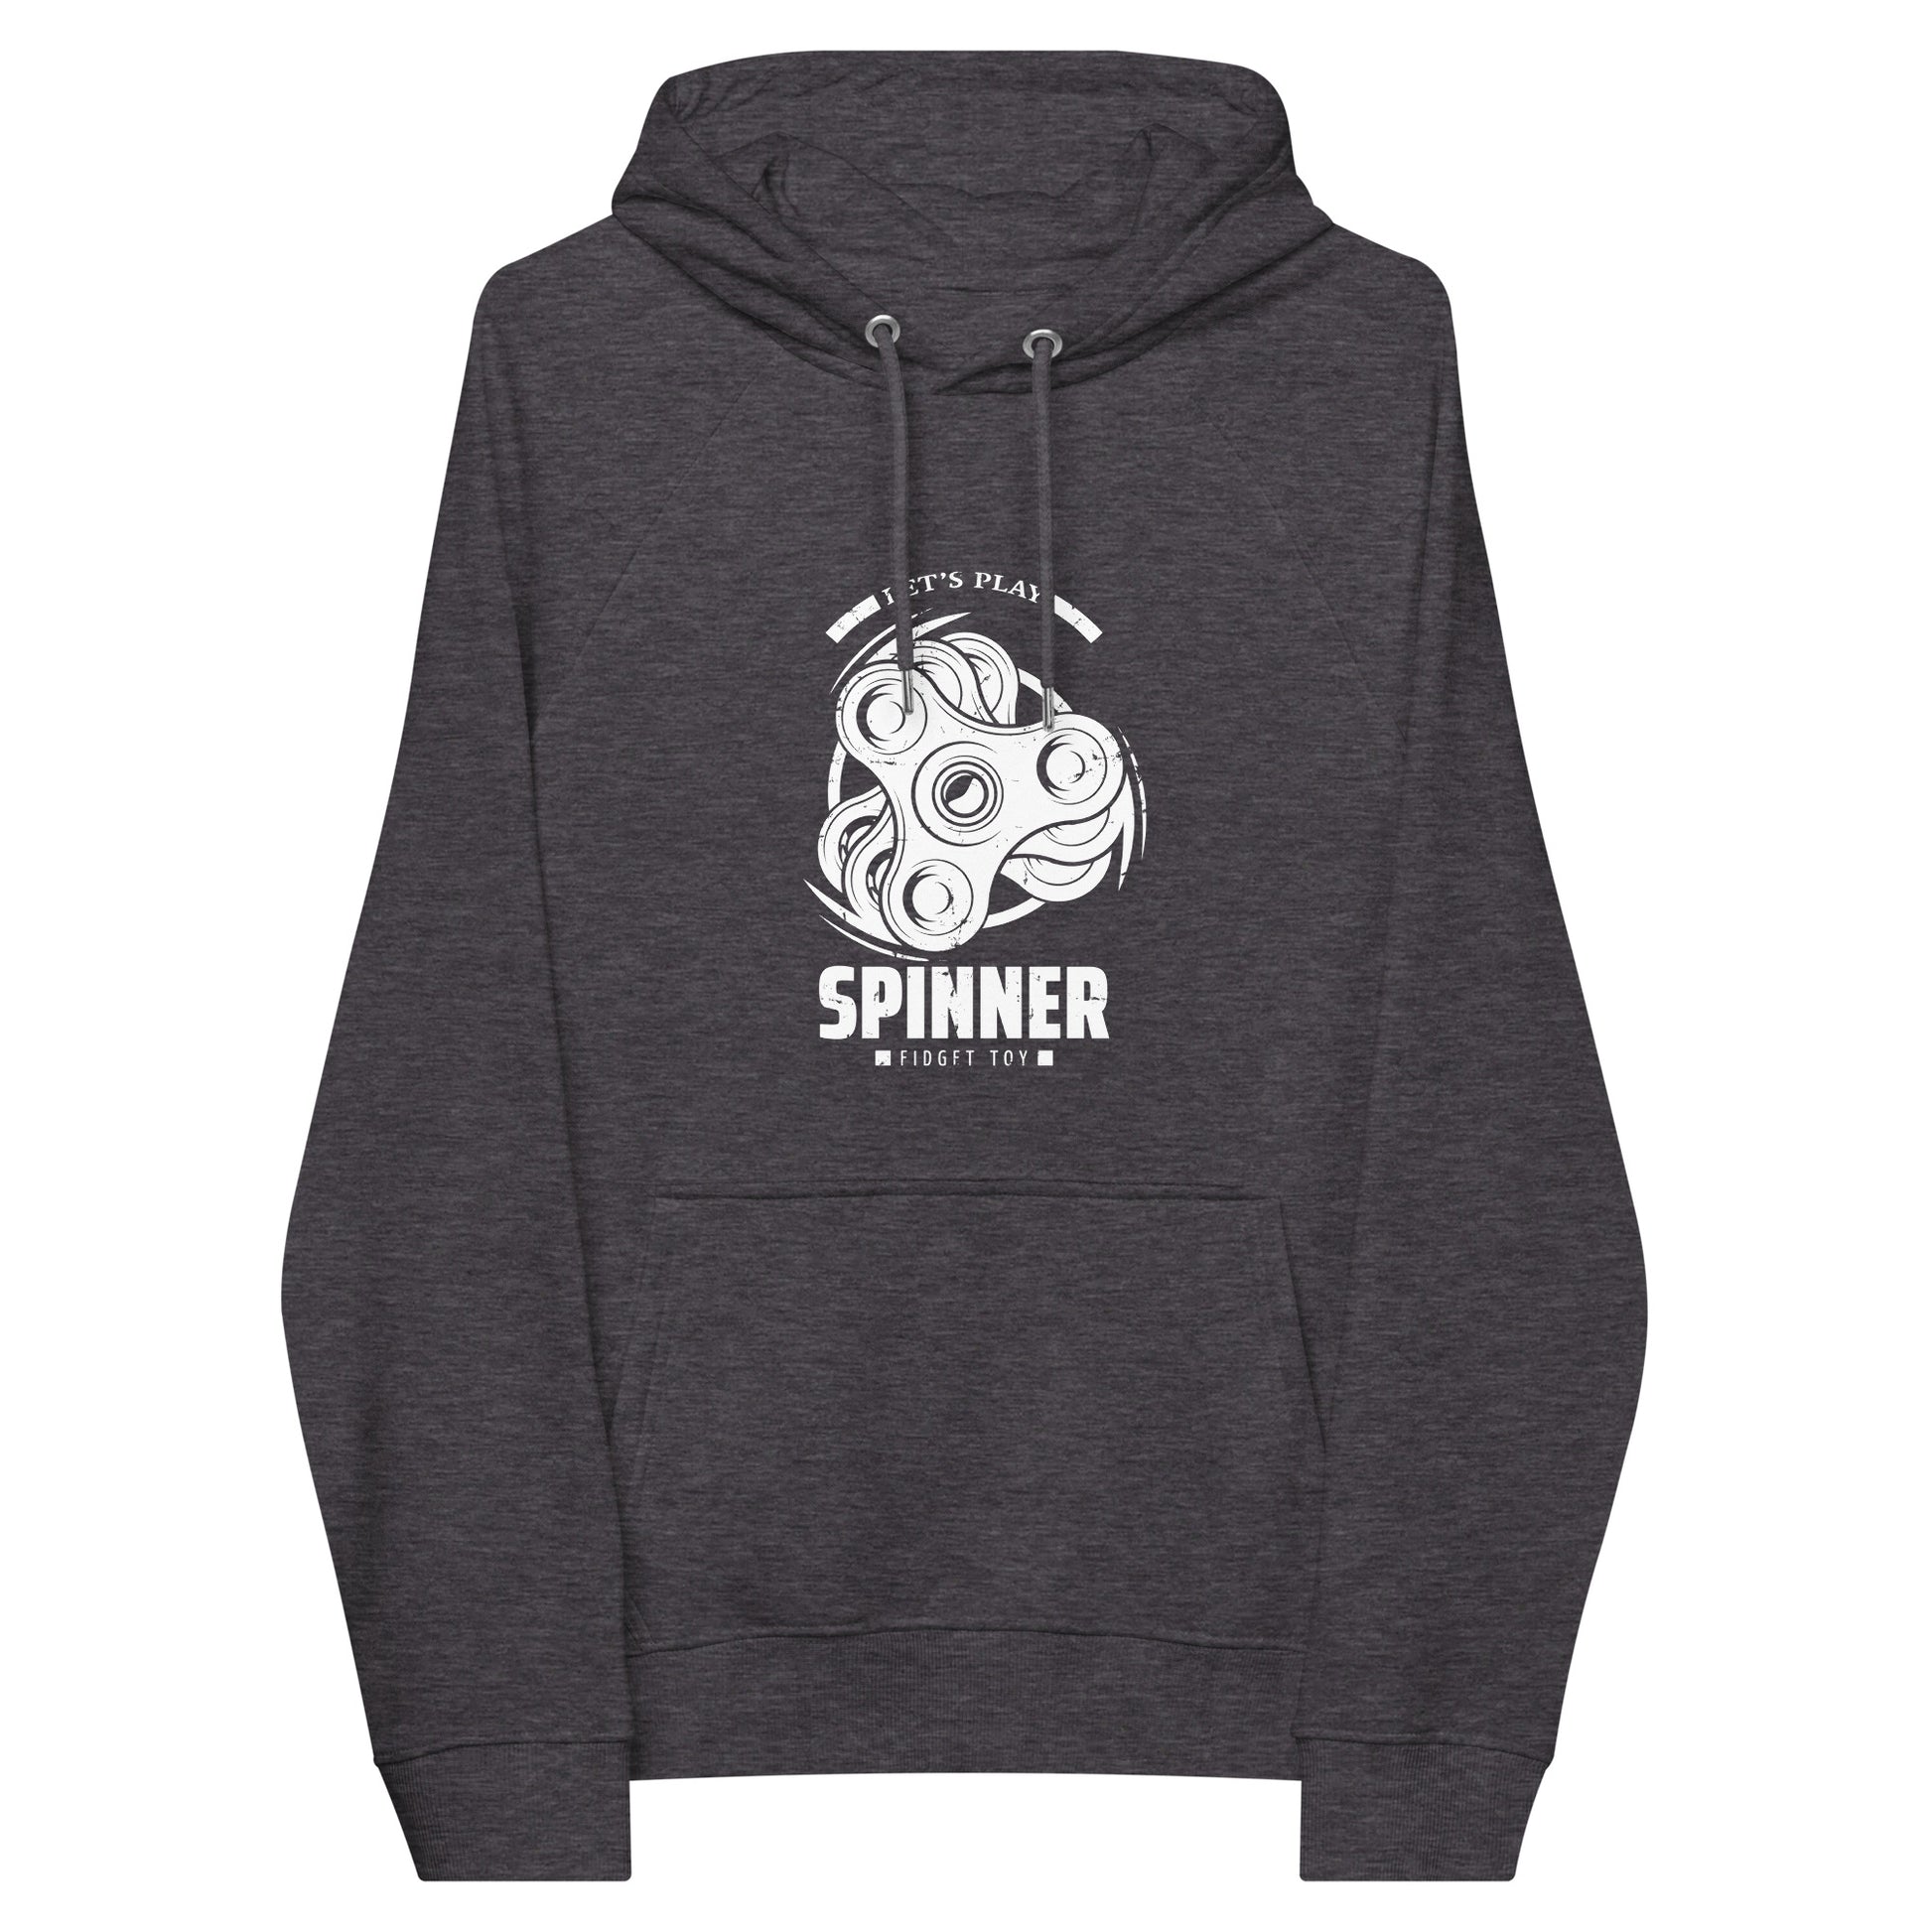 Spinner - Men eco raglan hoodie - HobbyMeFree